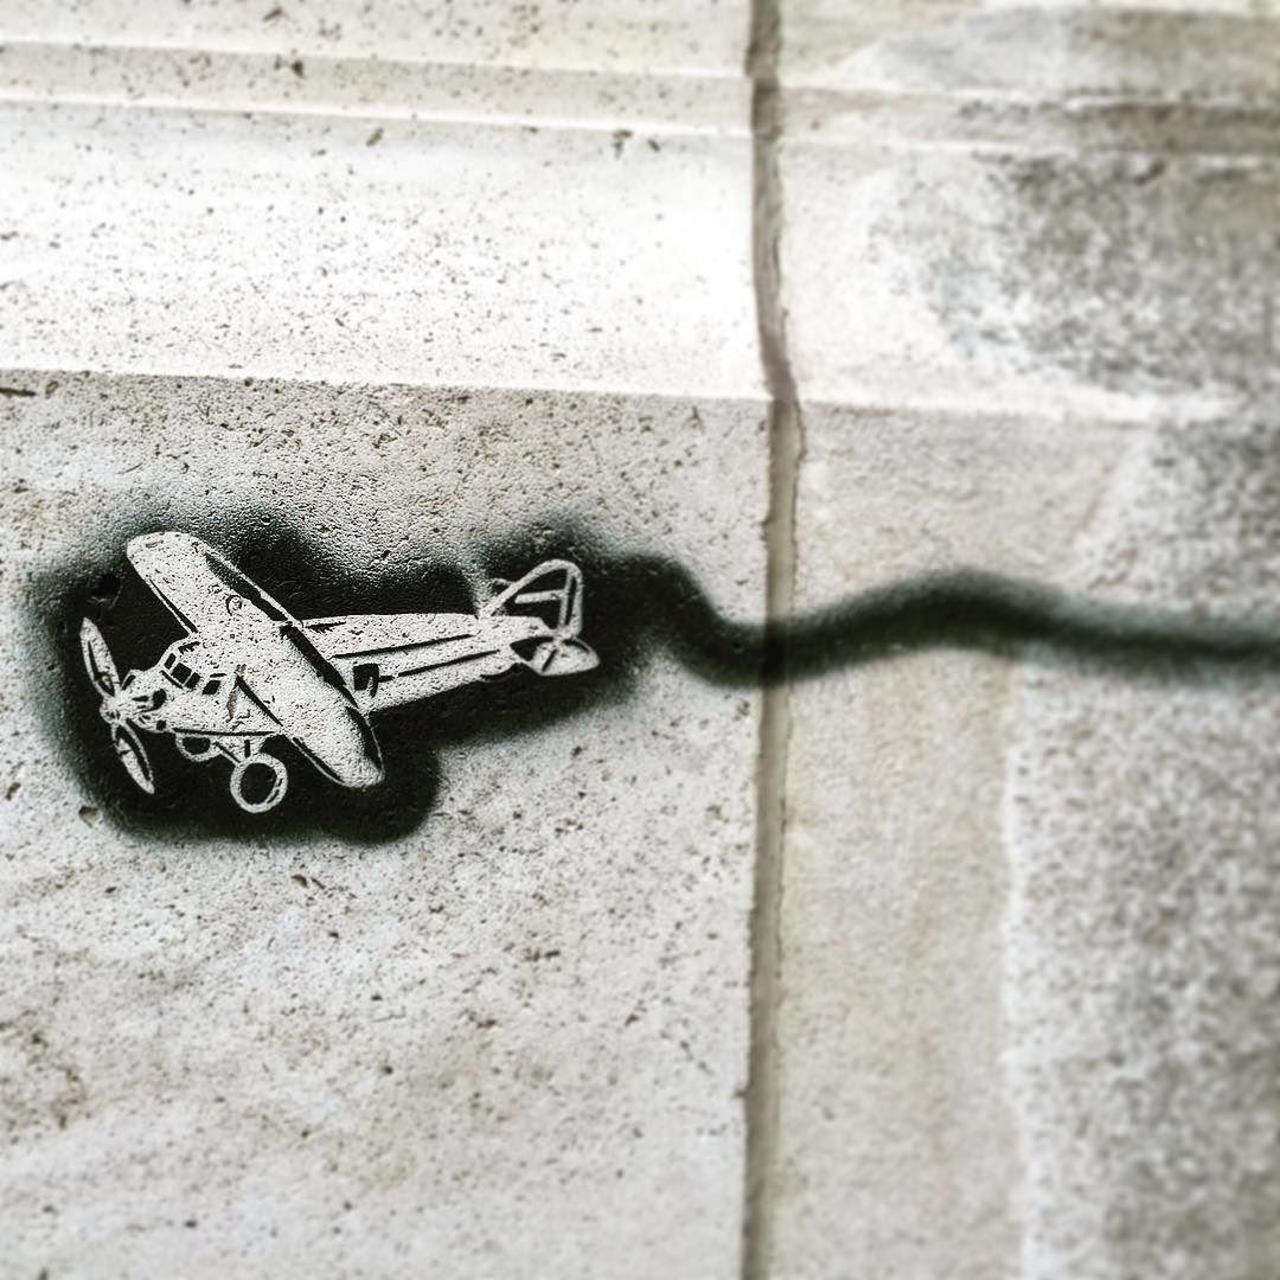 #Paris #graffiti photo by alexxsnell http://ift.tt/1LirR6Y #StreetArt http://t.co/bQxgrSzdSc https://goo.gl/7kifqw